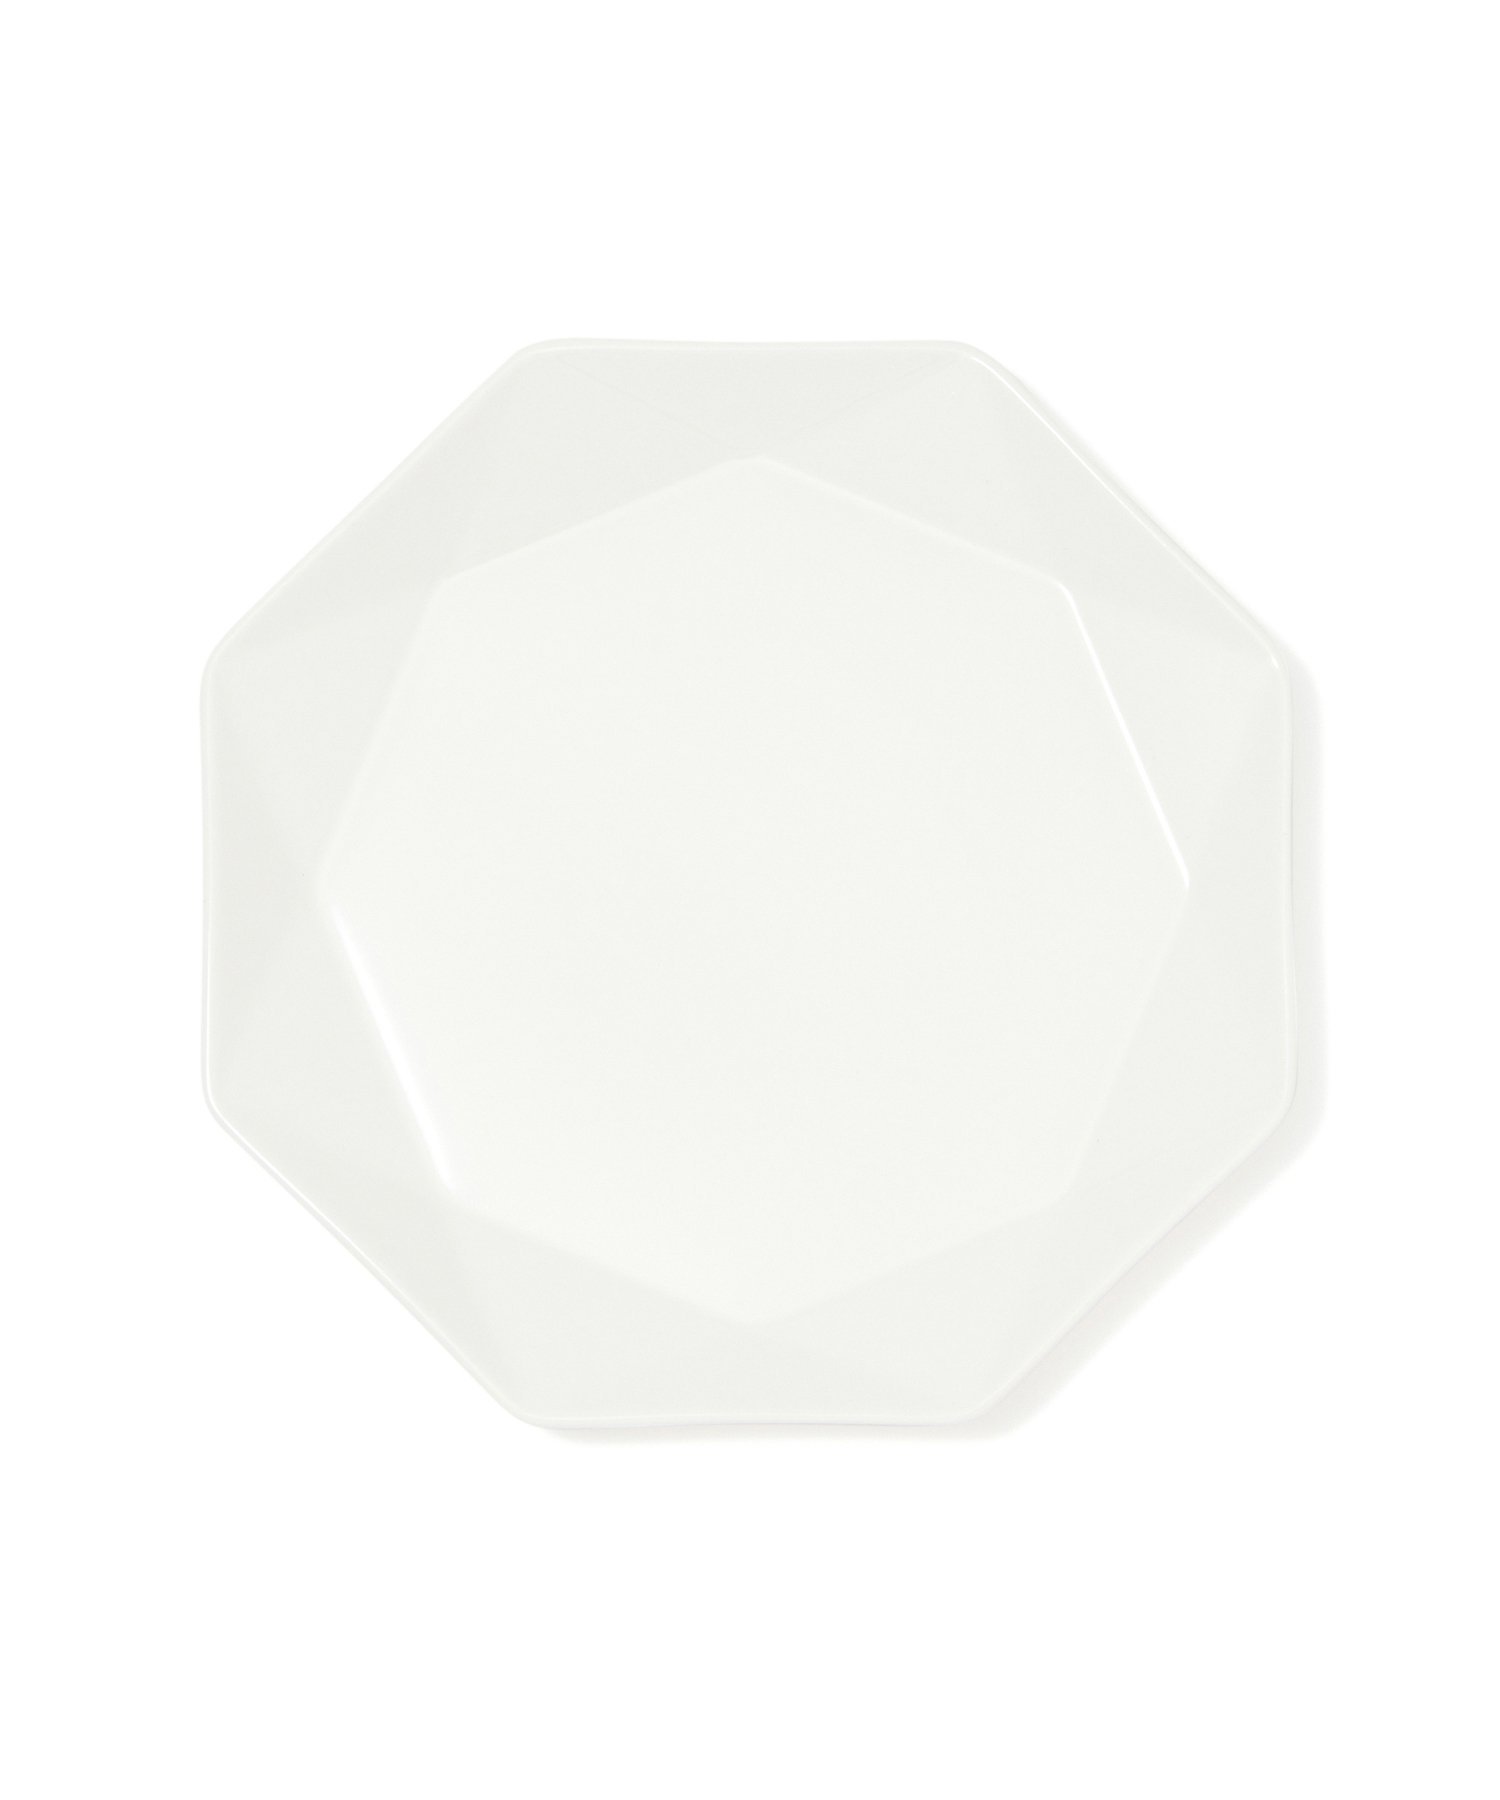 Francfranc ブランシェ プレート S オクタゴン フランフラン 食器・調理器具・キッチン用品 食器・皿 ホワイト